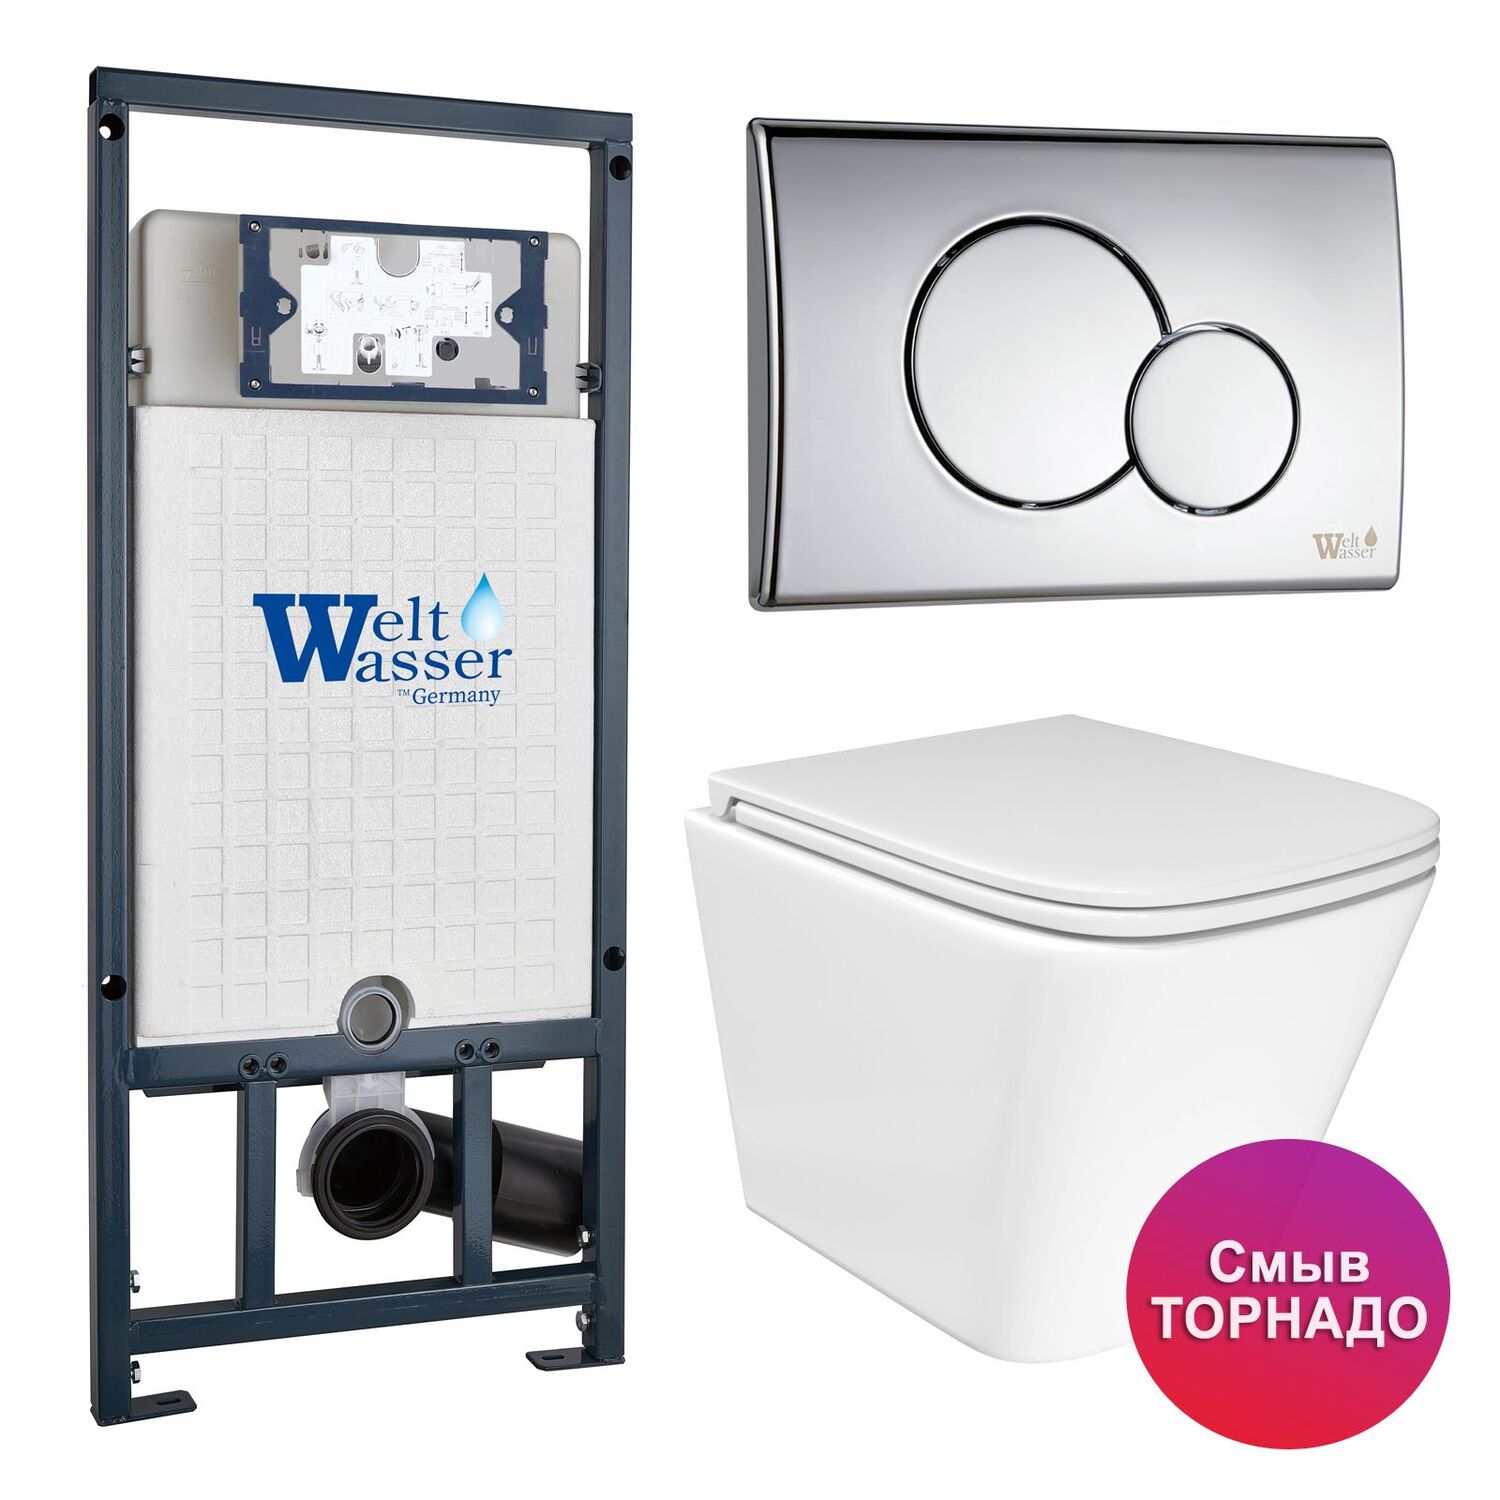 Комплект: Weltwasser Инсталляция Mar 507+Кнопка Mar 507 RD CR хром+Verna T JK3031025 белый унитаз, смыв Торнадо